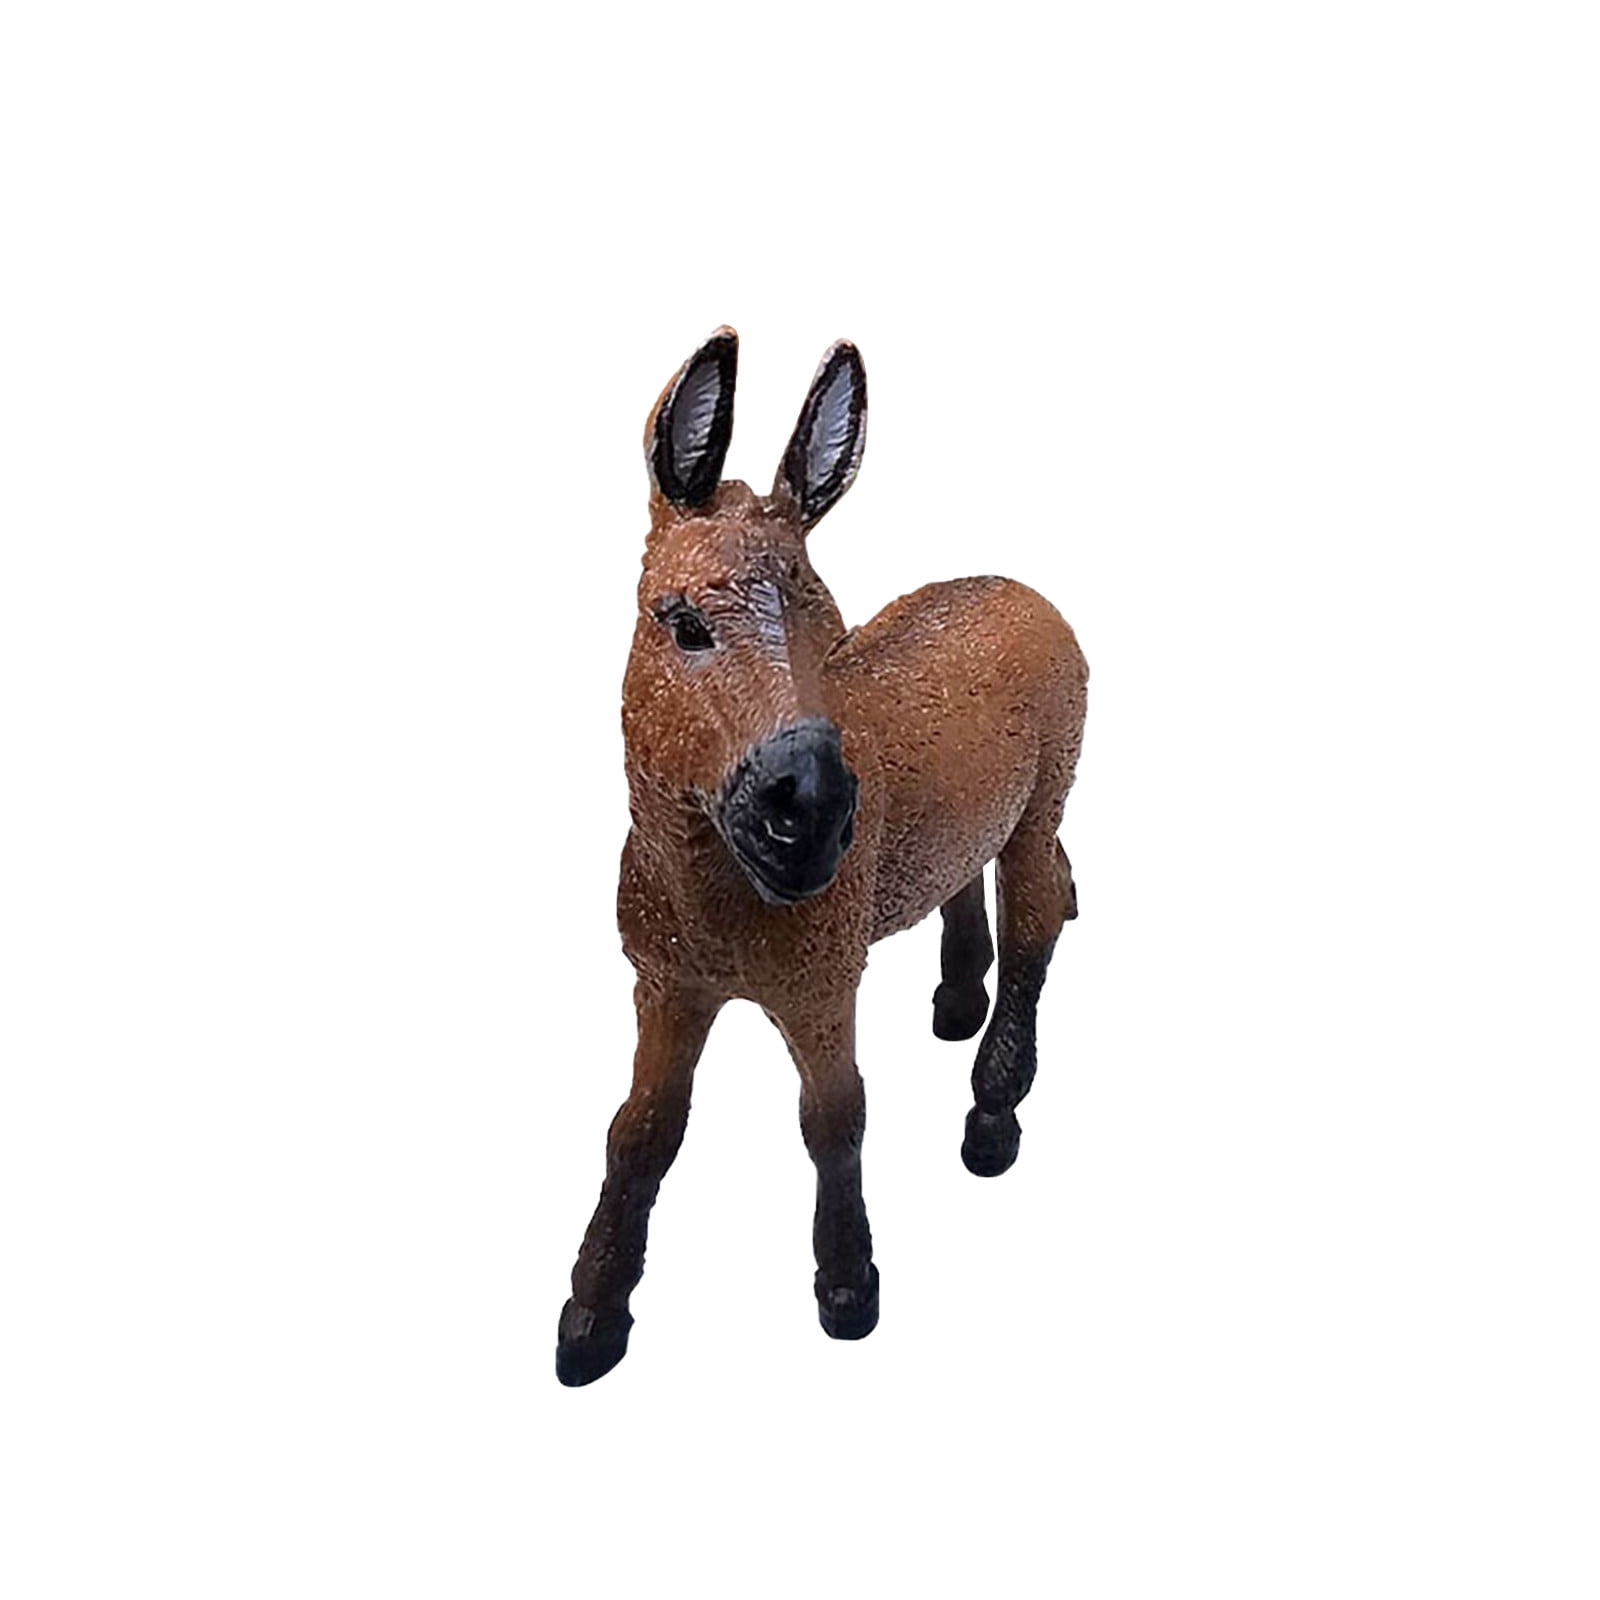 Donkey Animal Figure Safari Ltd NEW Toys Farm Figurine Educational Creatures 